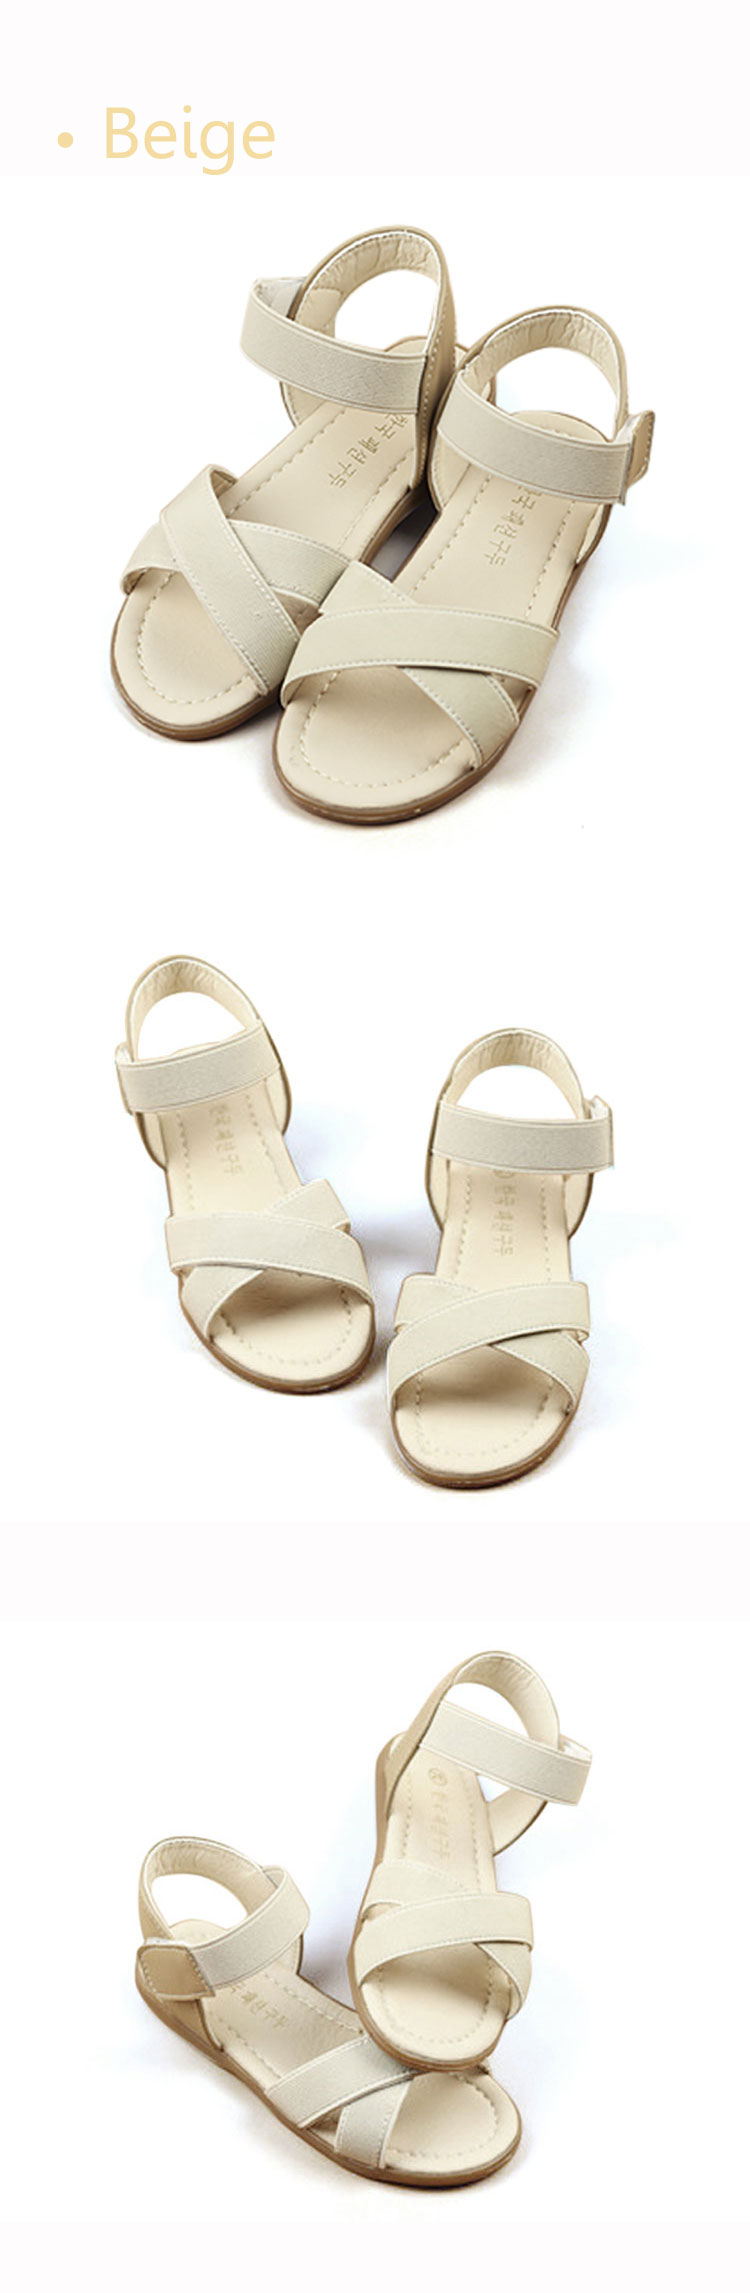 Girls-Summer-Roman-Sandals-Princess-Dress-Shoes-Kids-Beach-Breathable-Open-Toe-Flats-Children-Causal-1060188